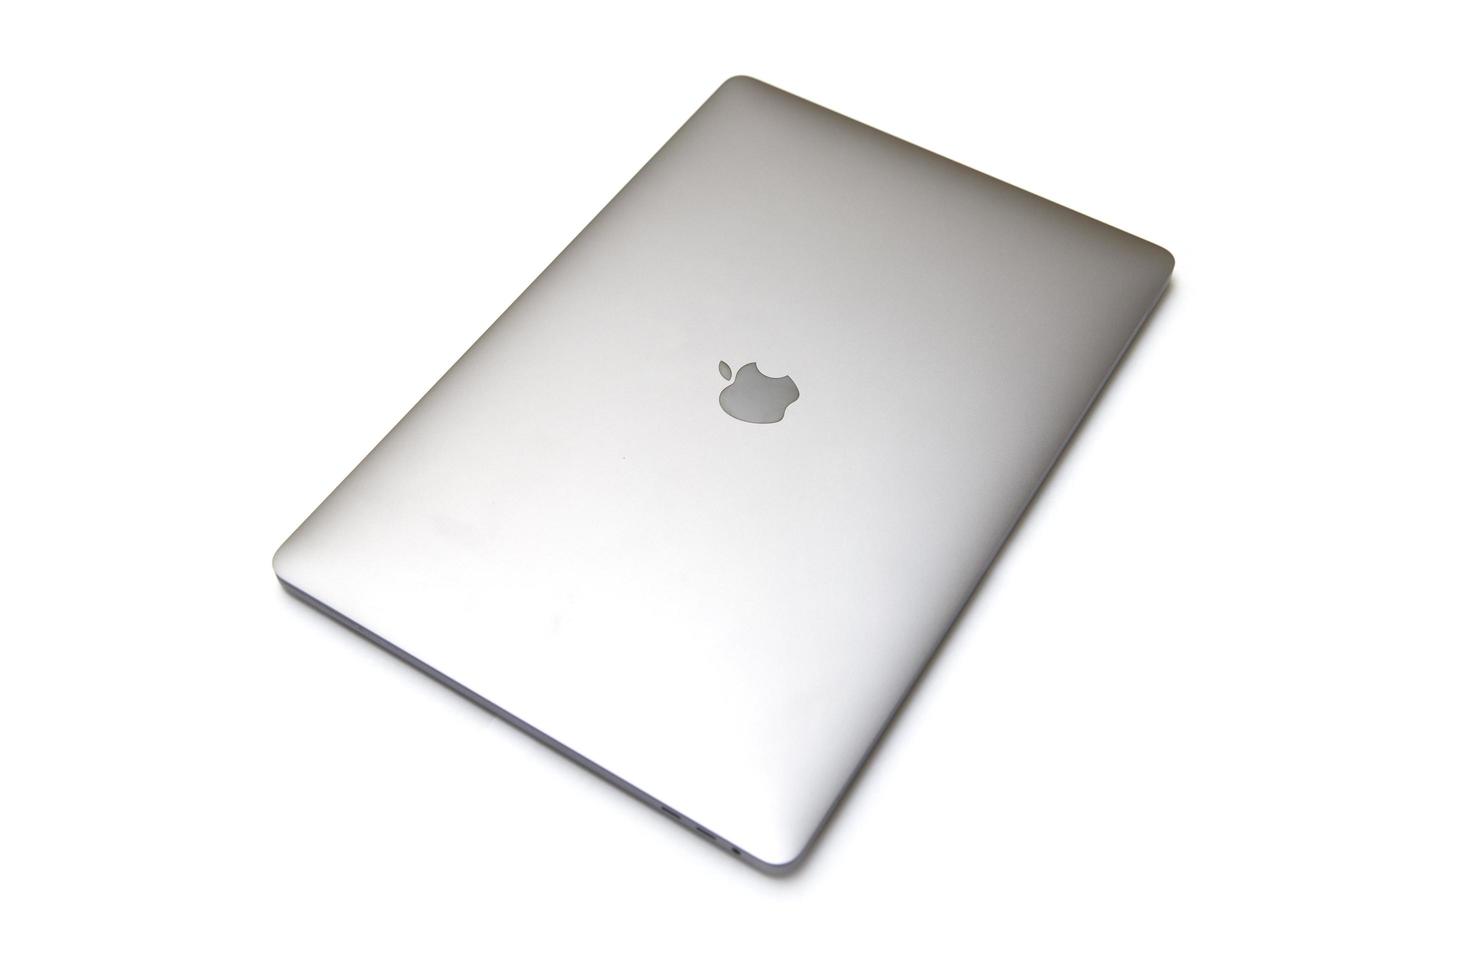 Belgrado, serbia, 18 luglio 2020 - computer macbook isolato su bianco. il macbook è un marchio di computer notebook prodotto da apple inc. foto